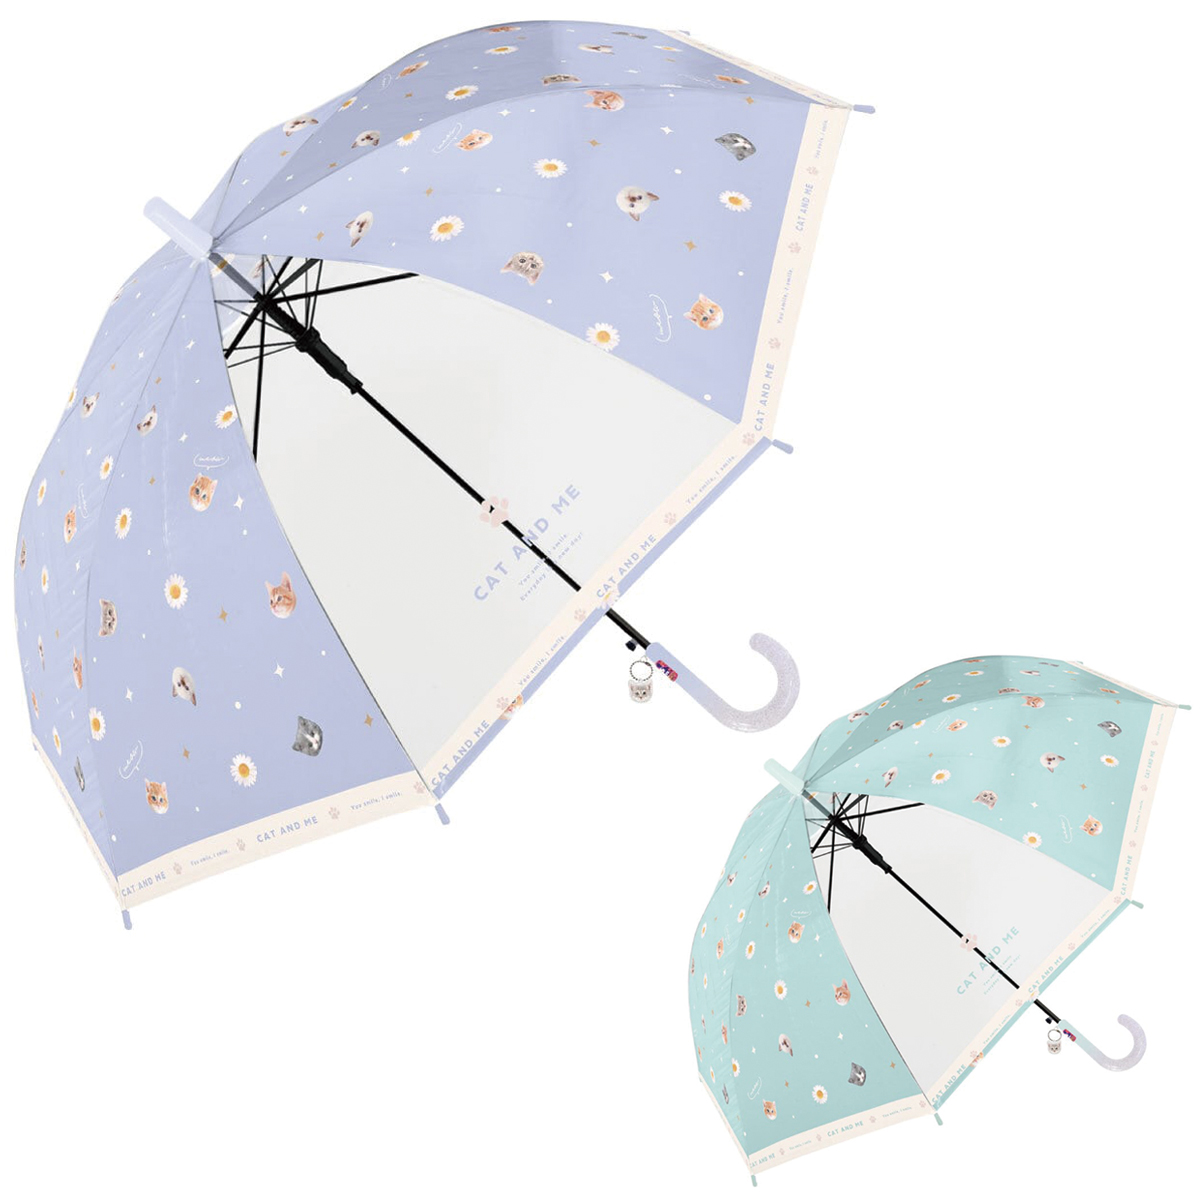 【中谷】キャットアンドミー 子ども用傘 ジャンプ傘